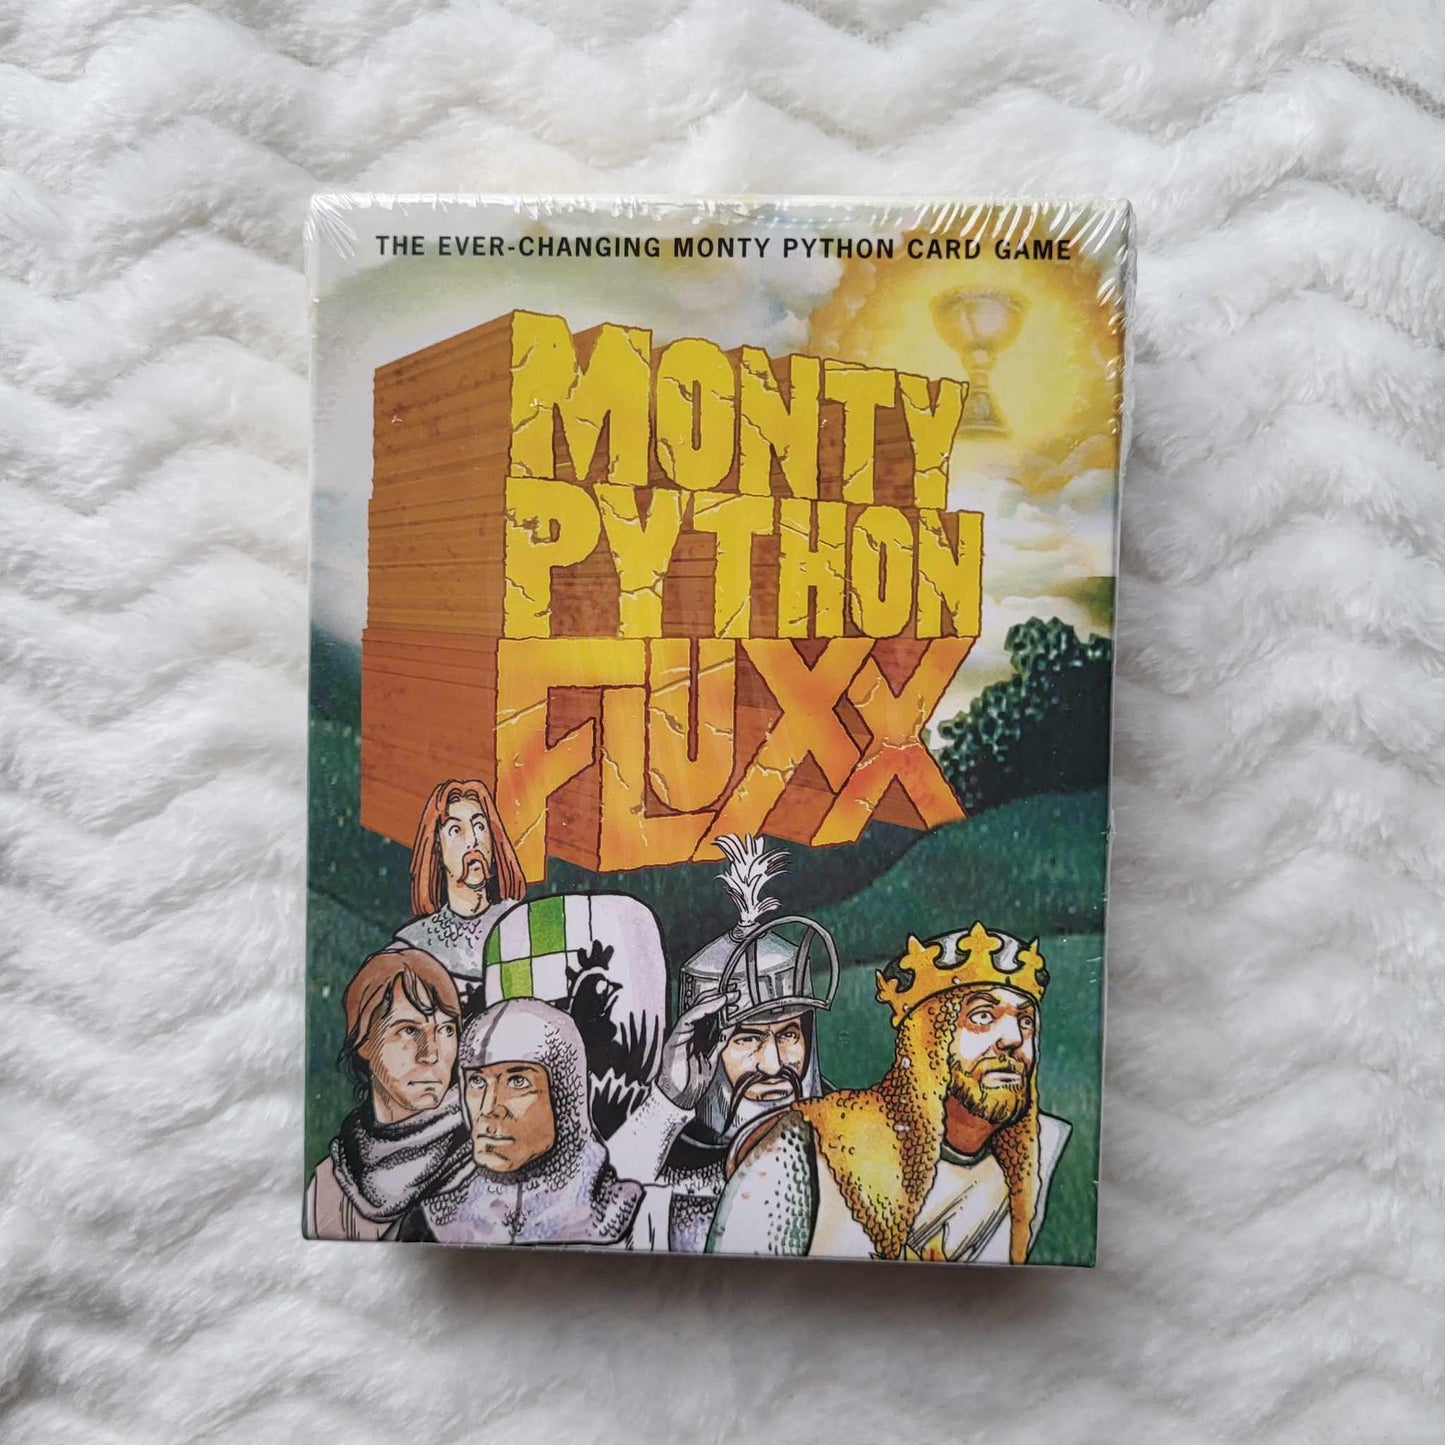 Monty Python Fluxx